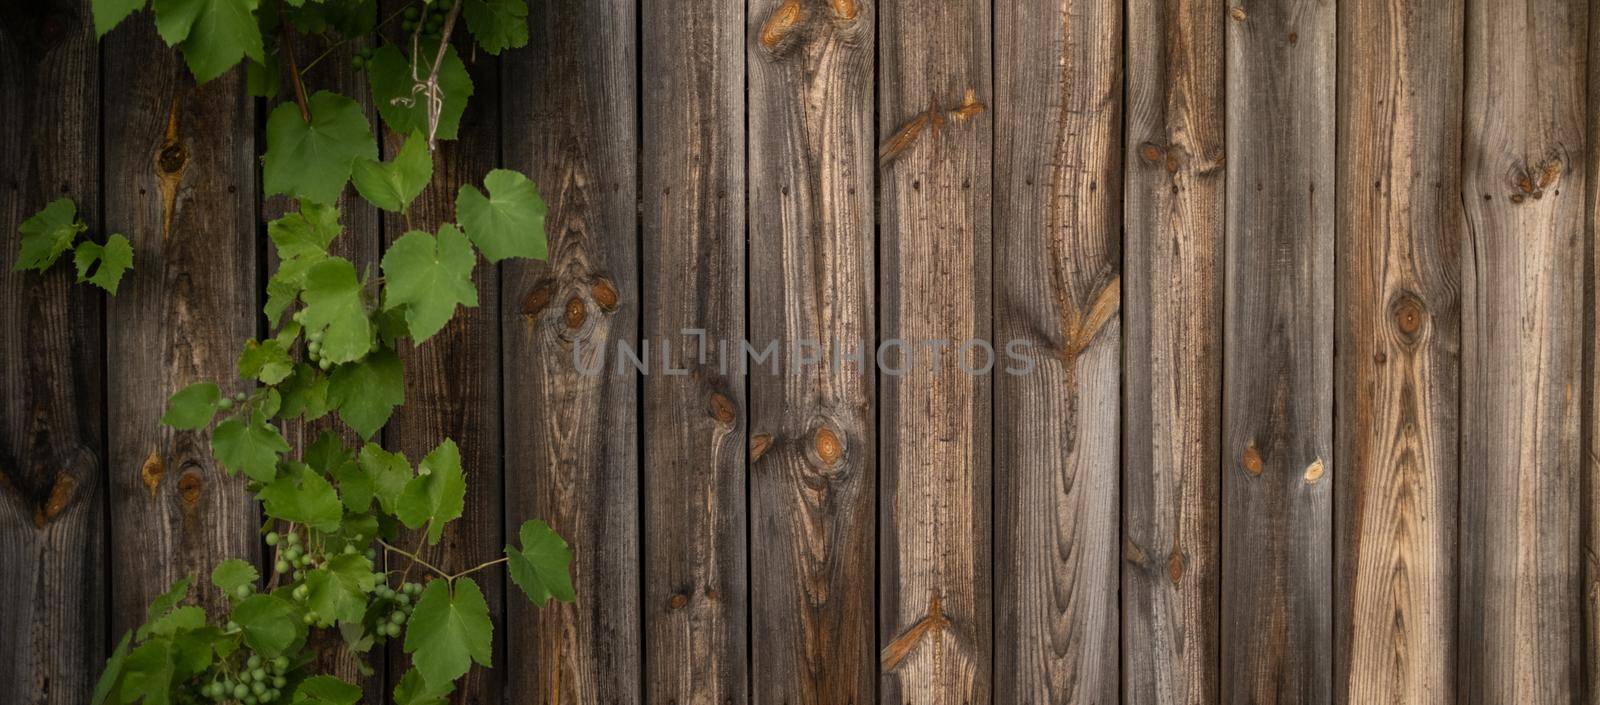 Grape leaves on wooden background by GekaSkr